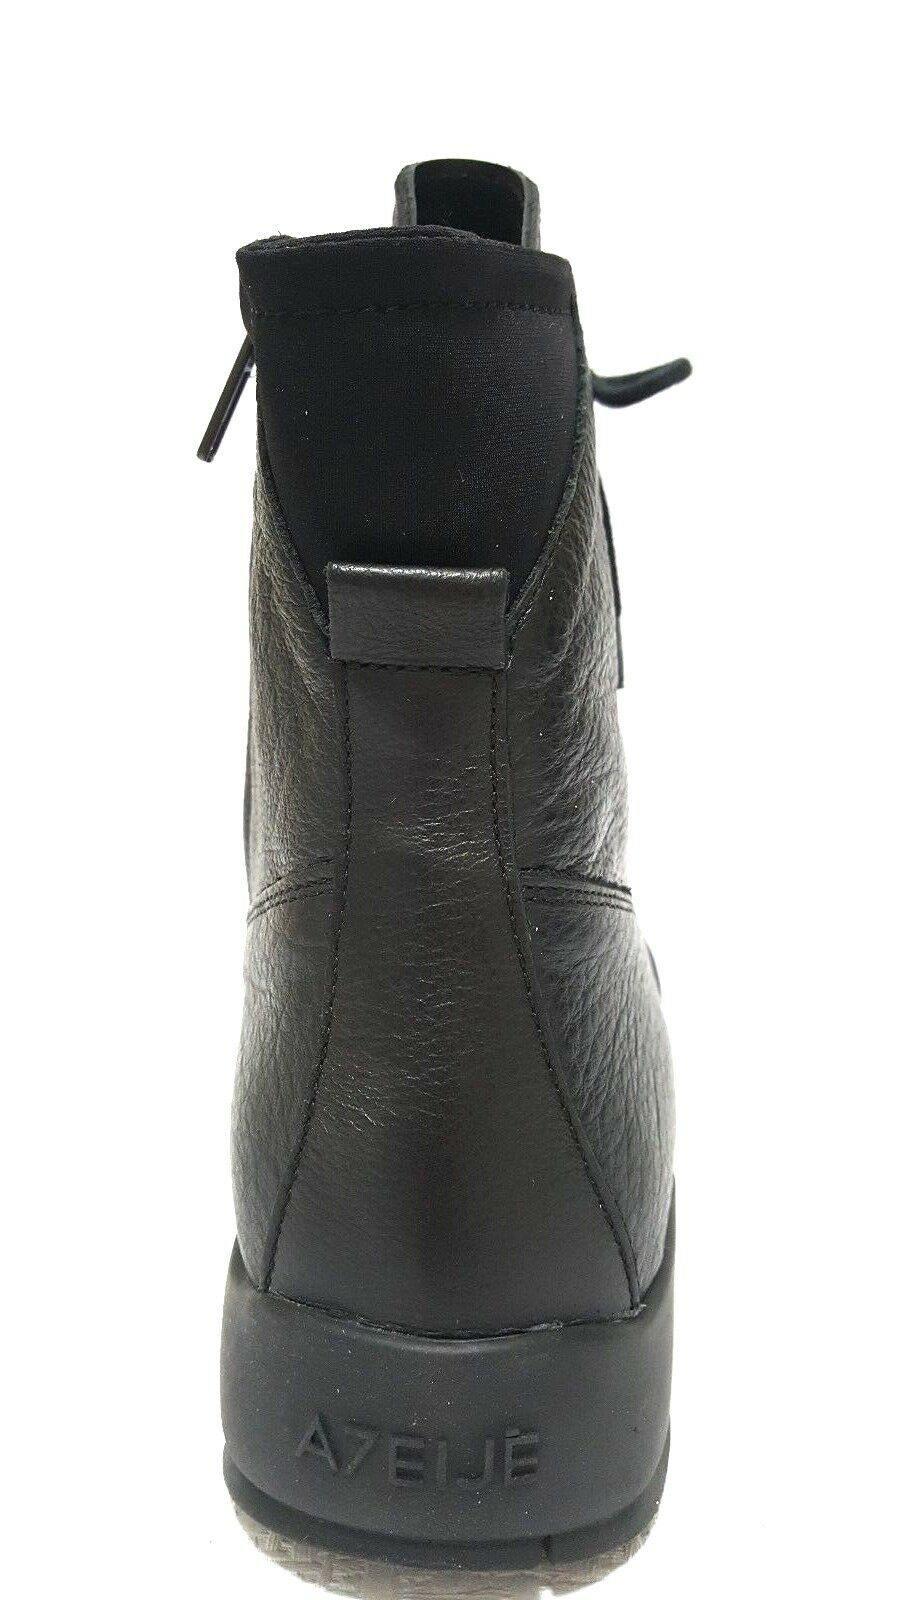 ATELJE71 MAVERICK  Platform Combat Leather Sneaker Boots Black Size US 9 M - SVNYFancy